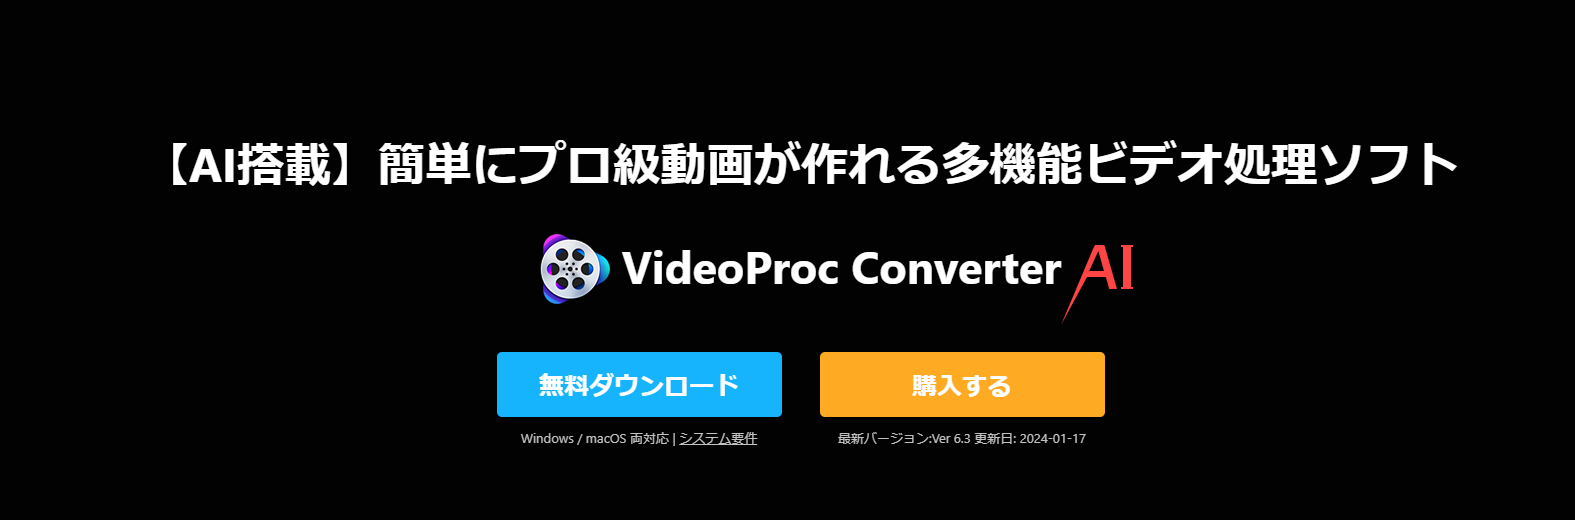 高画質化以外に画面録画機能もあるーVideoProc Converter AI